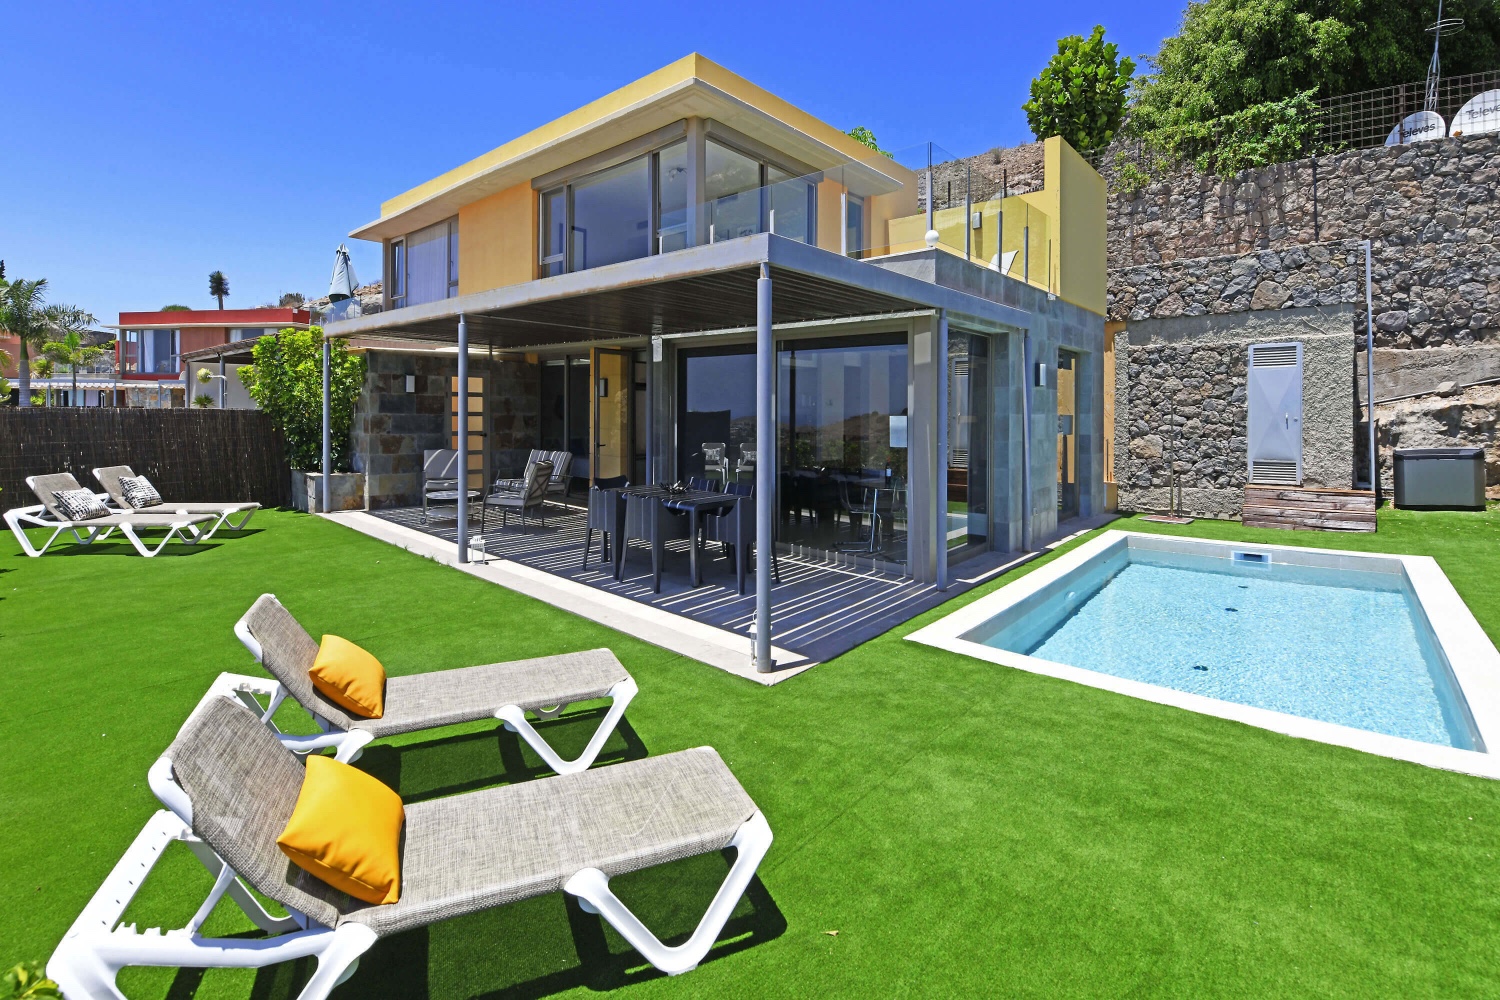 Dvoupodlažní dům s moderním designem, velkými prosklenými výlohami a příjemným venkovním prostorem s vlastním bazénem